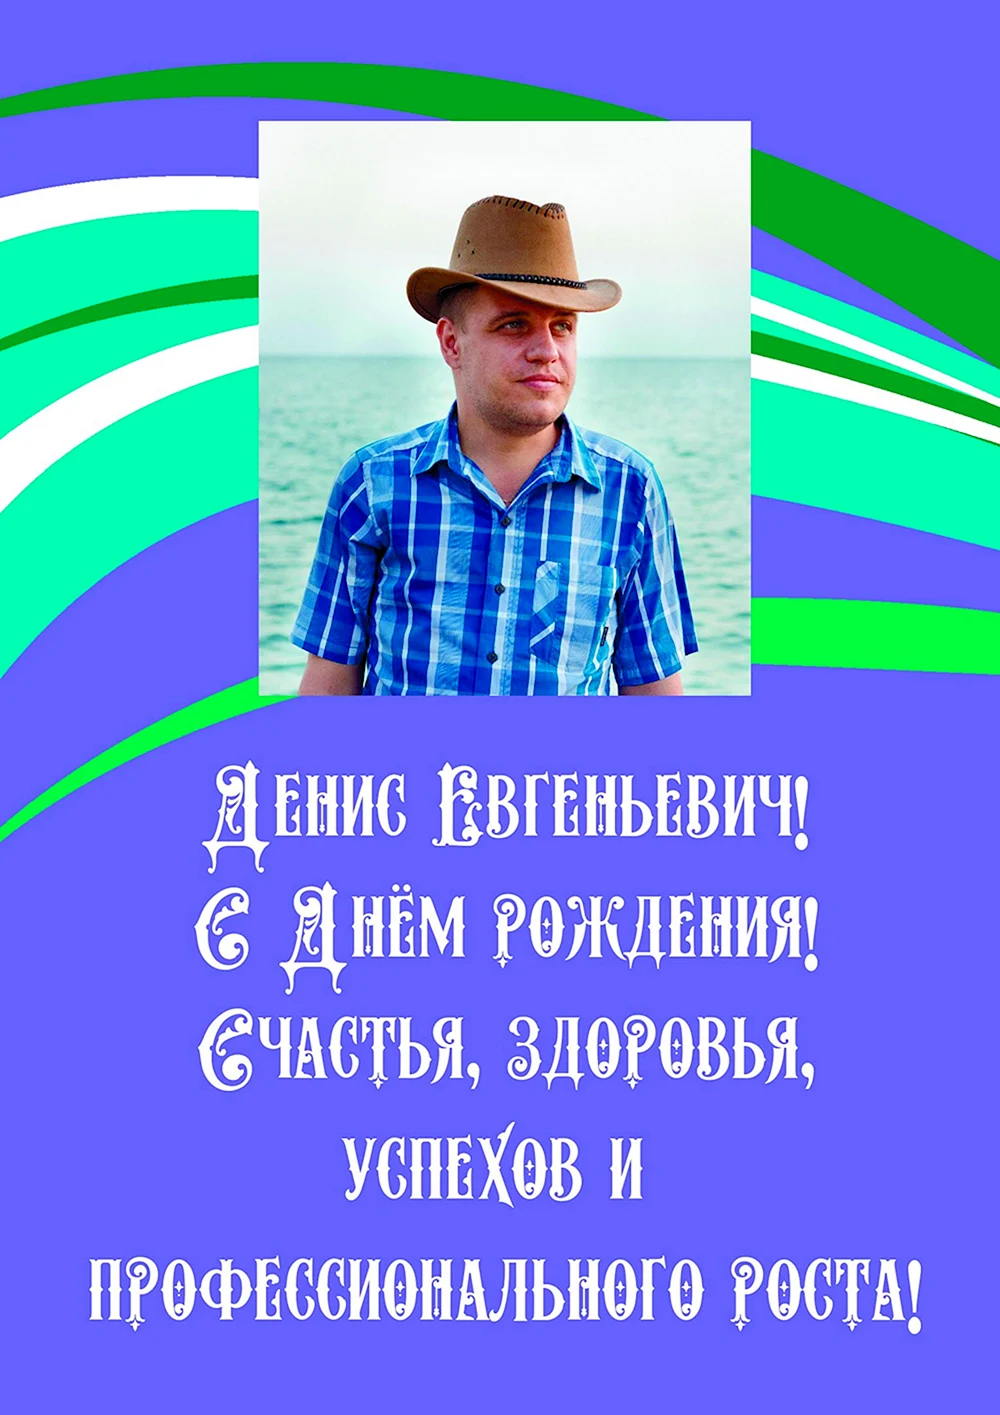 Поздравления с днём рождения Дениса Евгеньевича